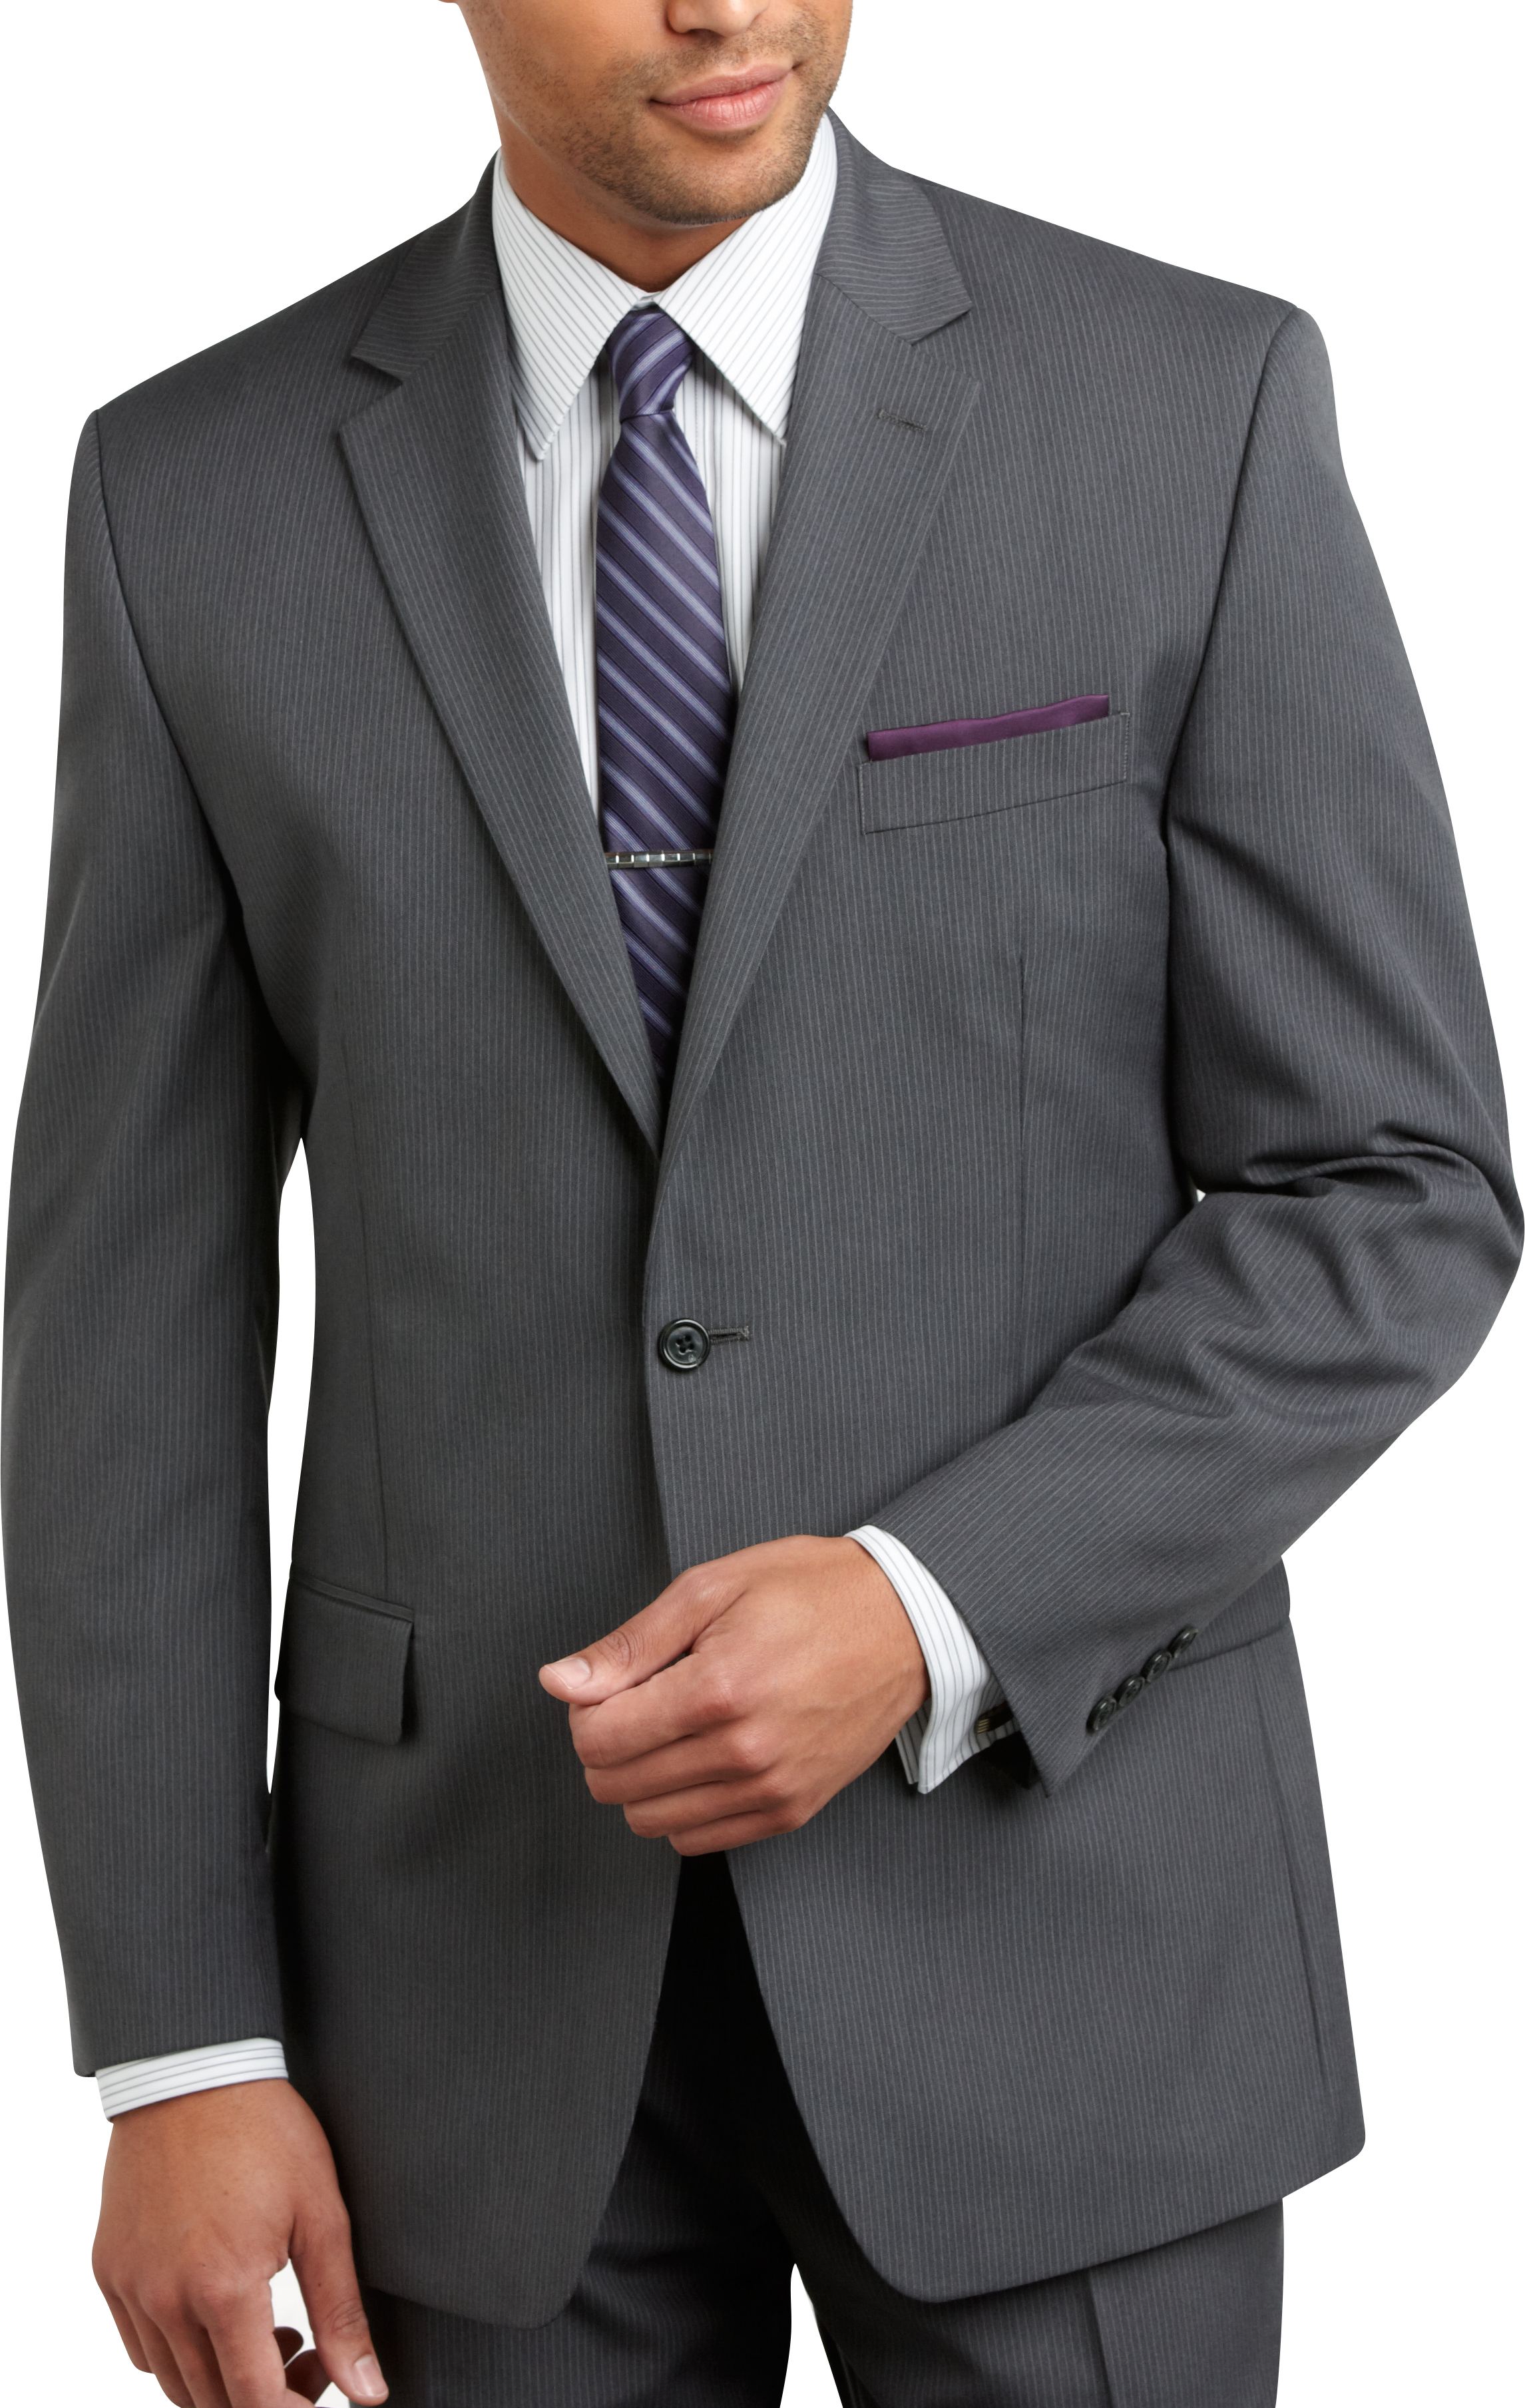 michael kors gray suit